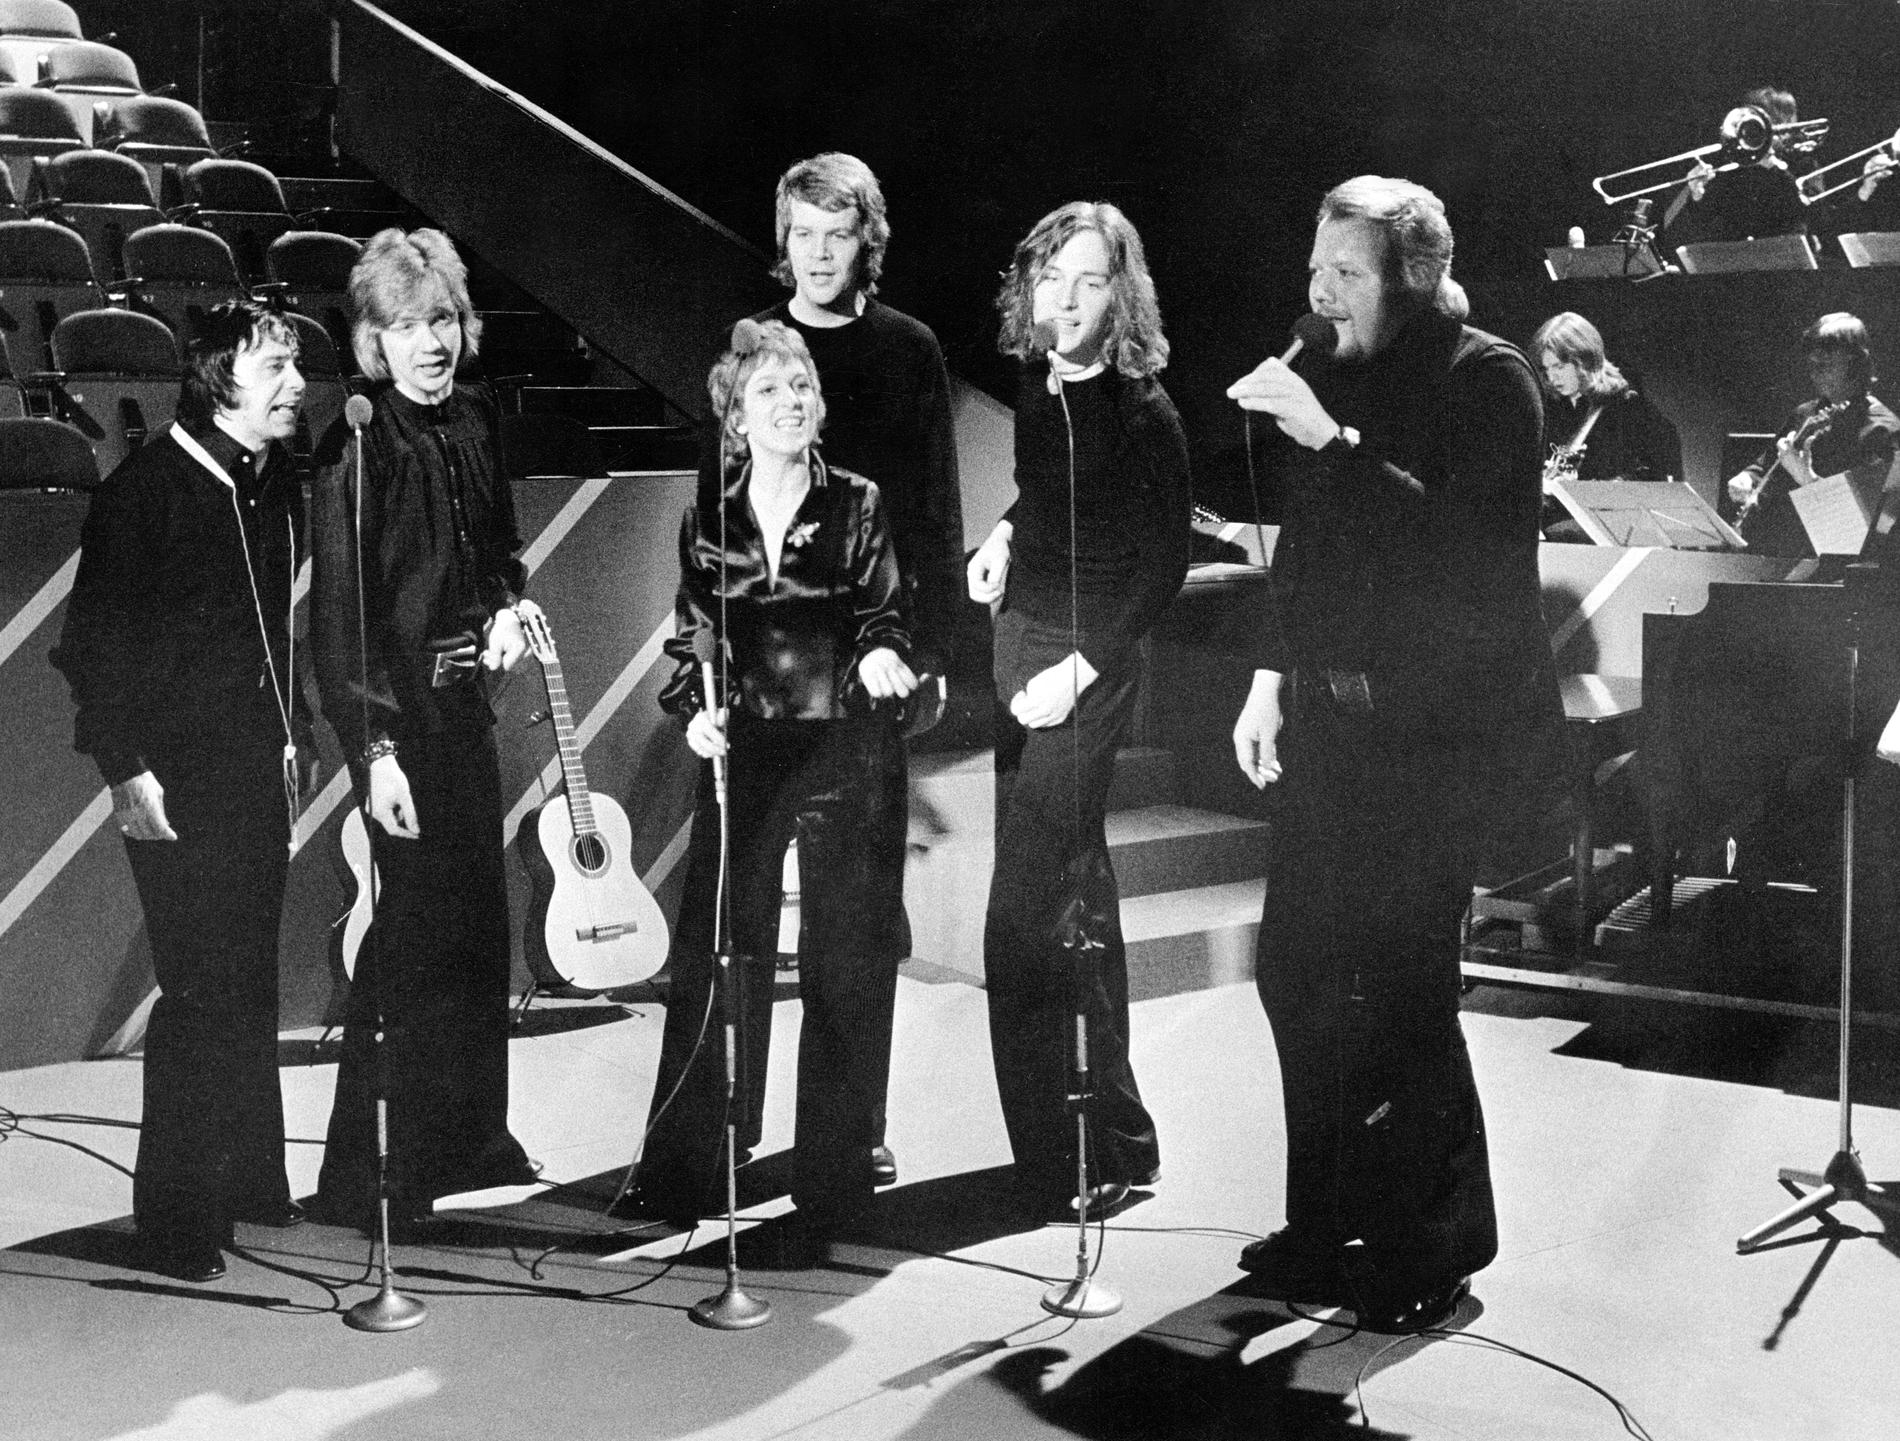 1972 Jerry Williams, Björn Skifs, Siw Malmkvist, Lasse Berghagen, Tomas Ledin, och Svante Thuresson,